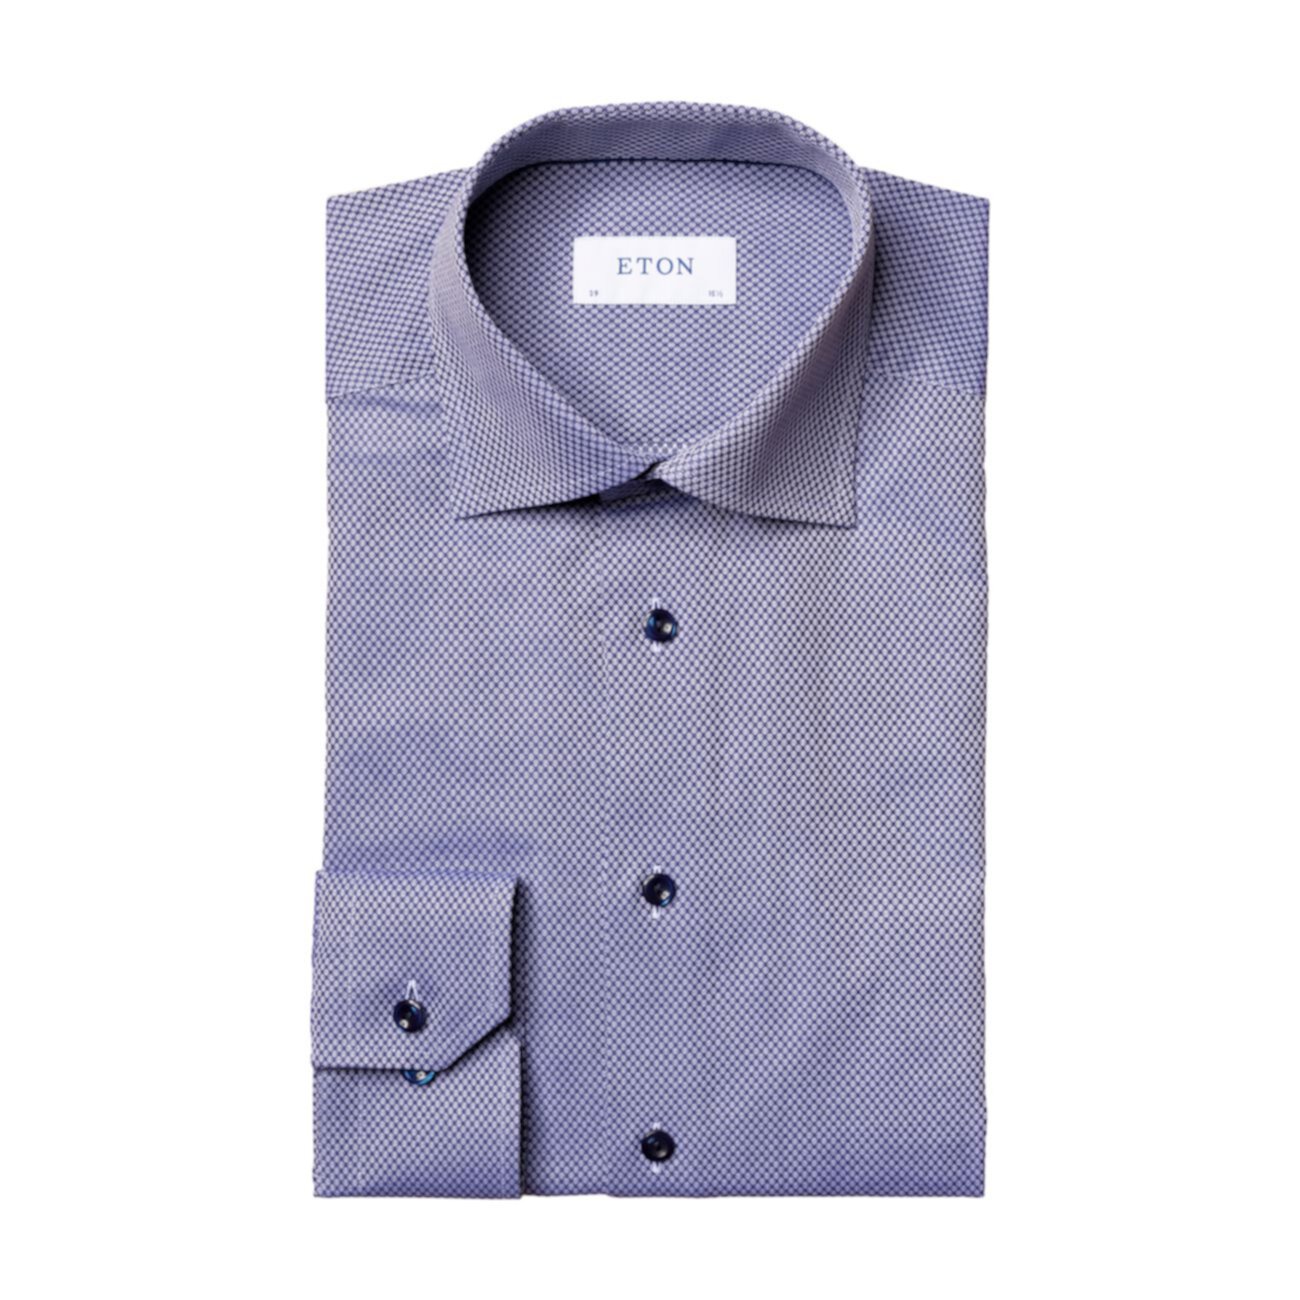 Фактурная классическая рубашка современного кроя Eton